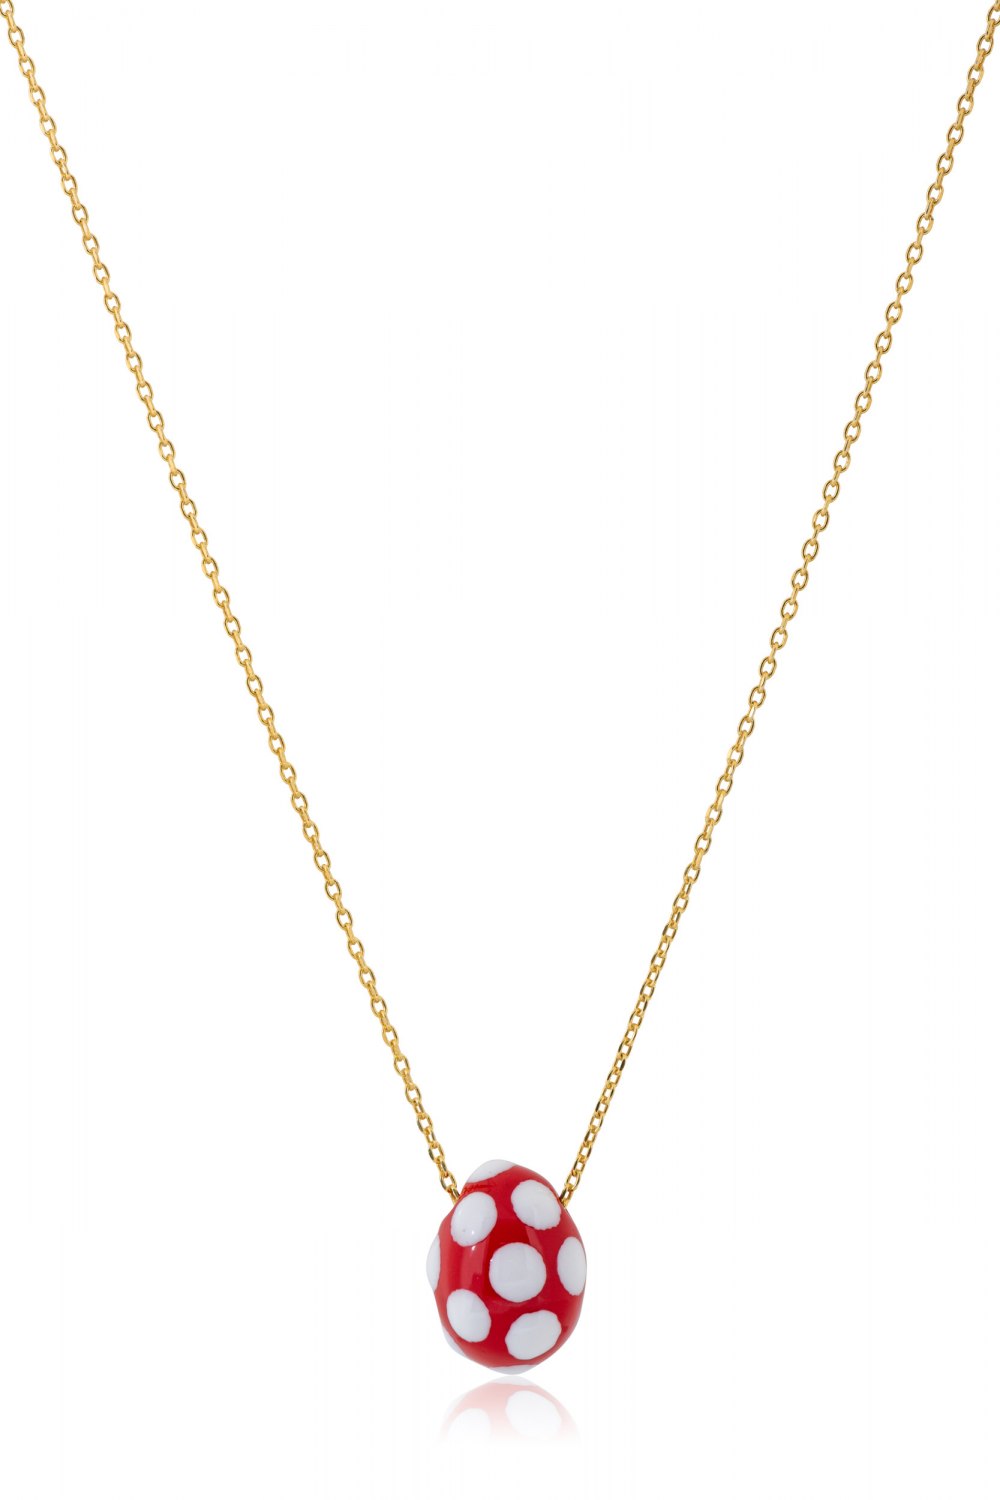 KESSARIS - Red Polka-Dot Easter Egg Pendant Necklace 